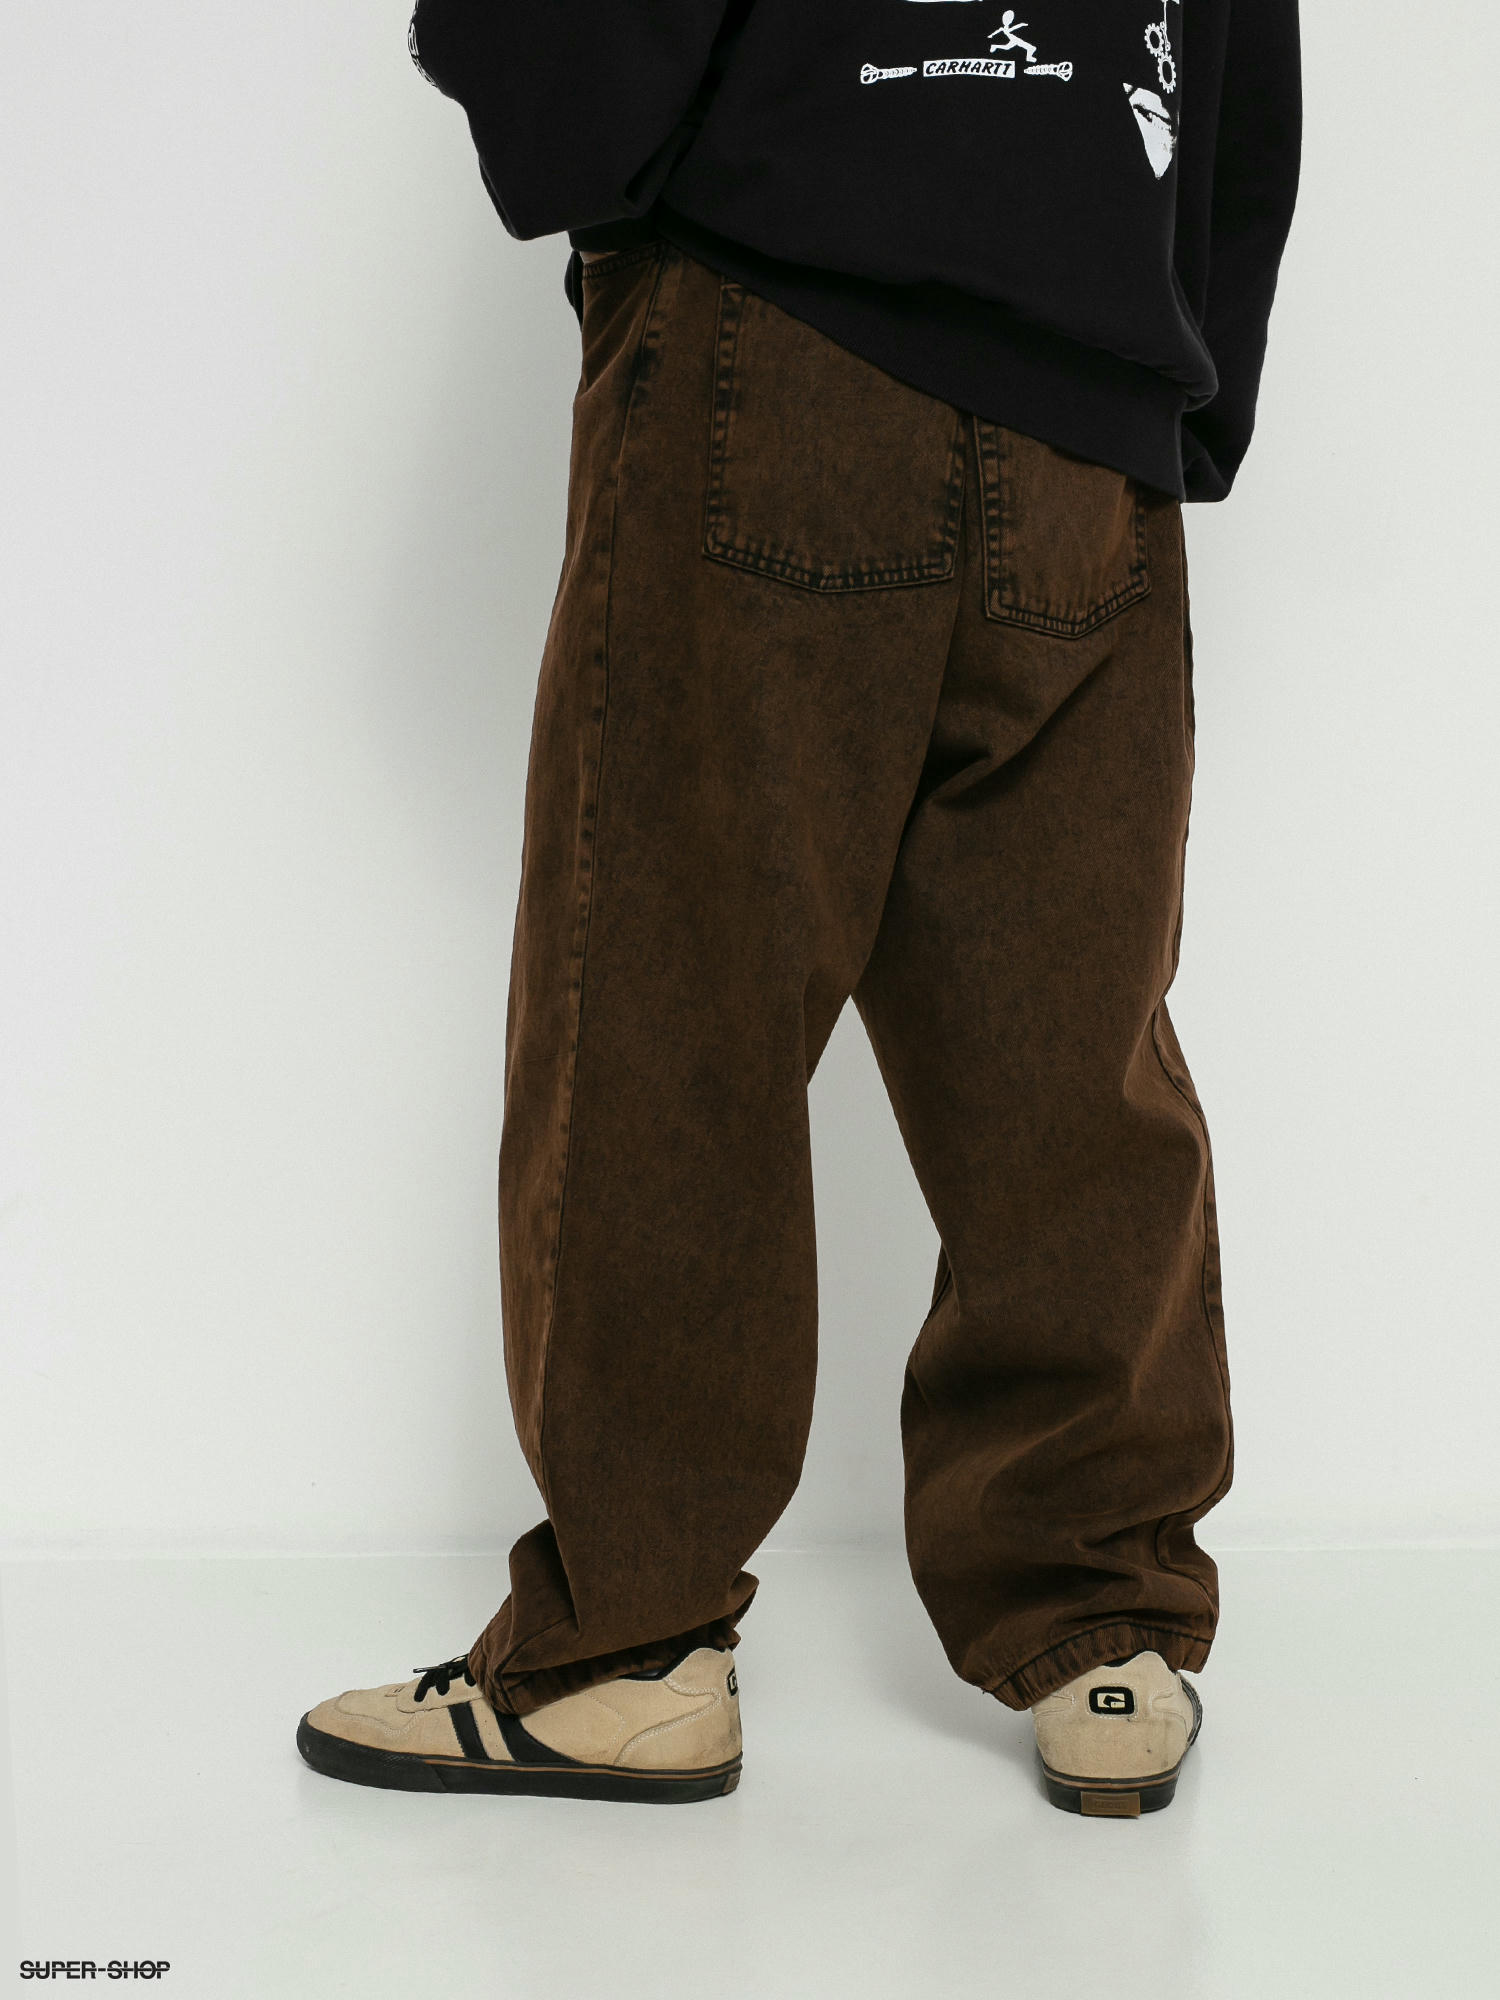 Polar Skate Big Boy Jeans Pants (brown black)